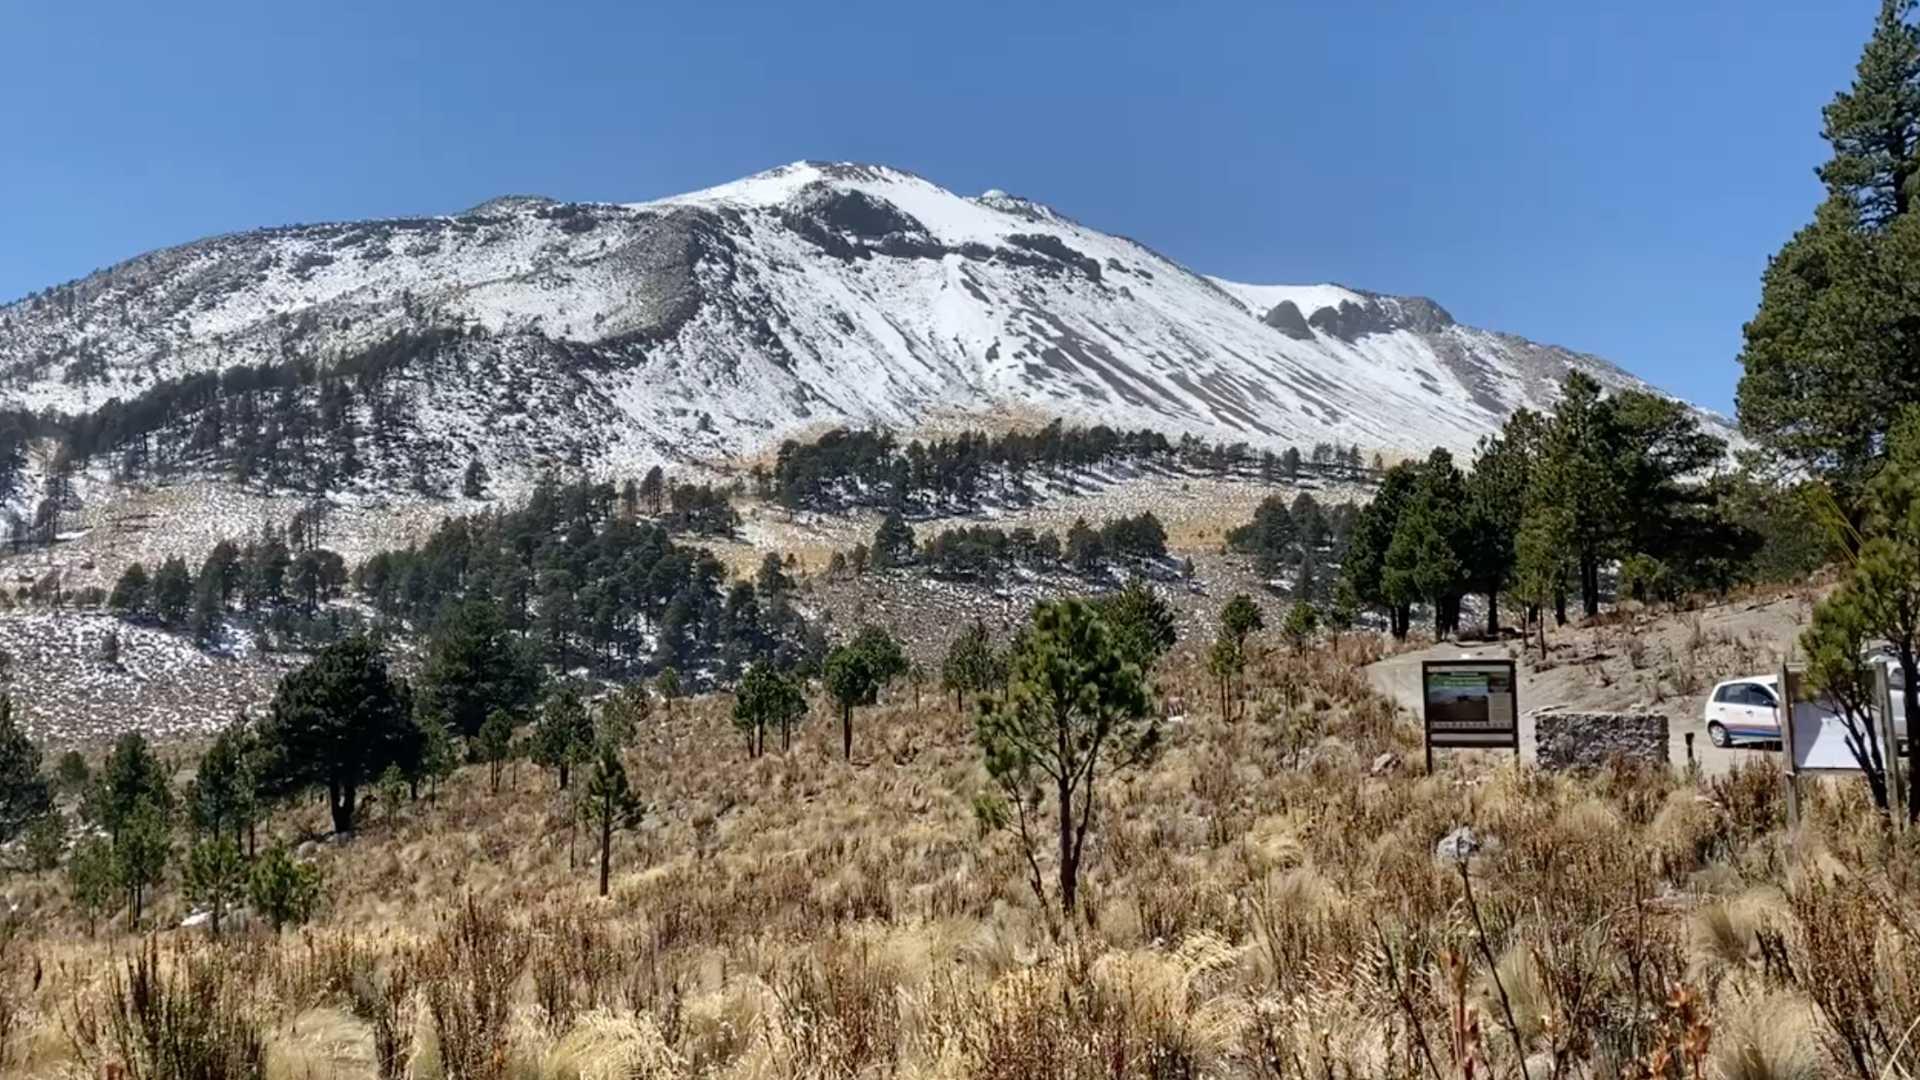 Alpinista desaparecido en el Pico de Orizaba